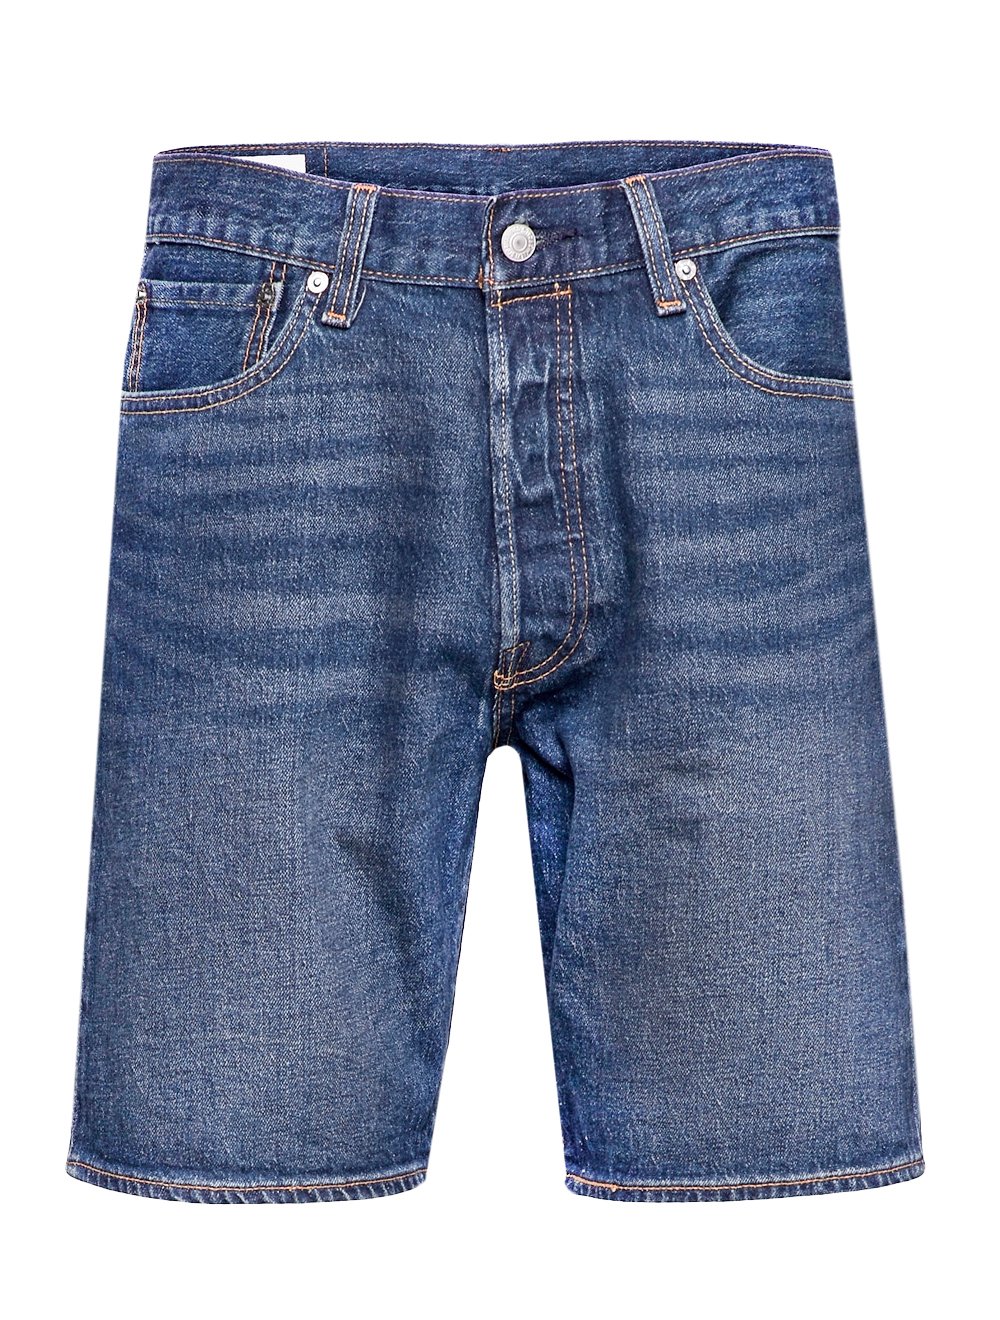 Bermuda Levis Jeans Masculina 412 Slim Shorts Stretch Matte Azul